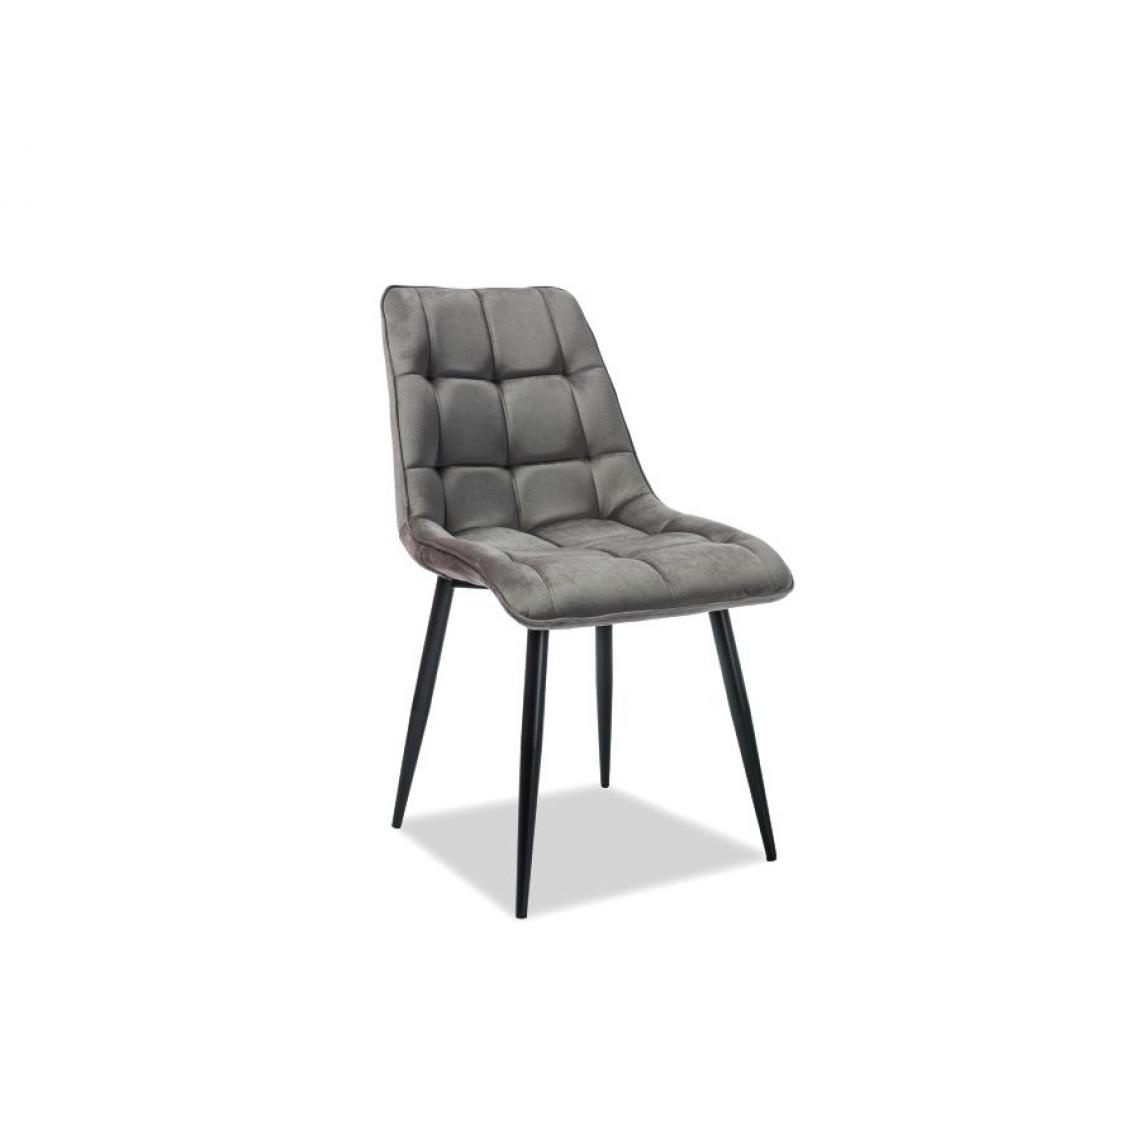 Hucoco - CONE | Chaise moderne matelassé salon bureau | Dimensions 89x51x44 cm | Rembourrage en velours | Pieds en métal mats - Gris - Chaises